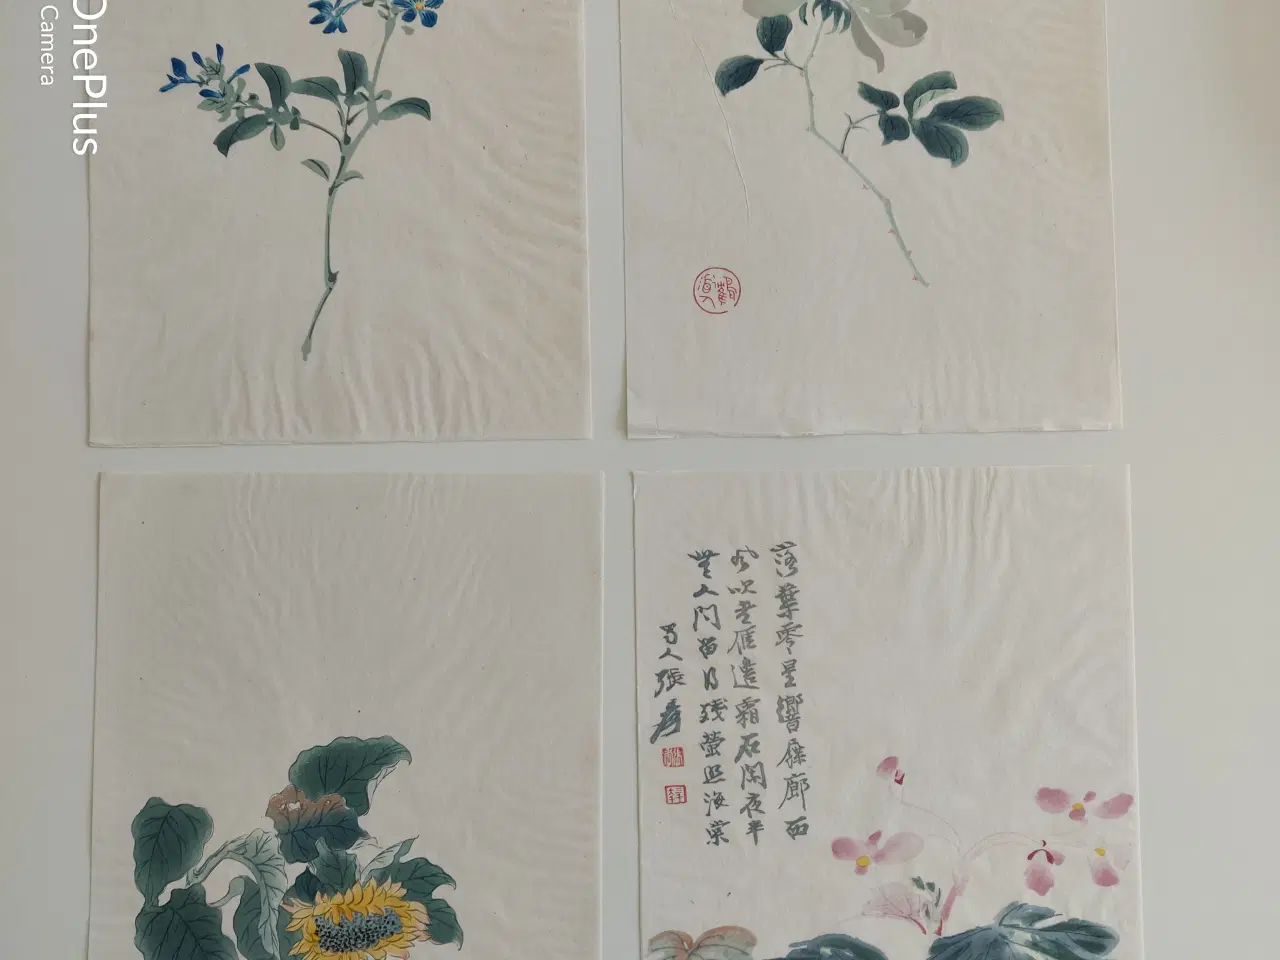 Billede 1 - blomster illustrationer, gl. kinesiske